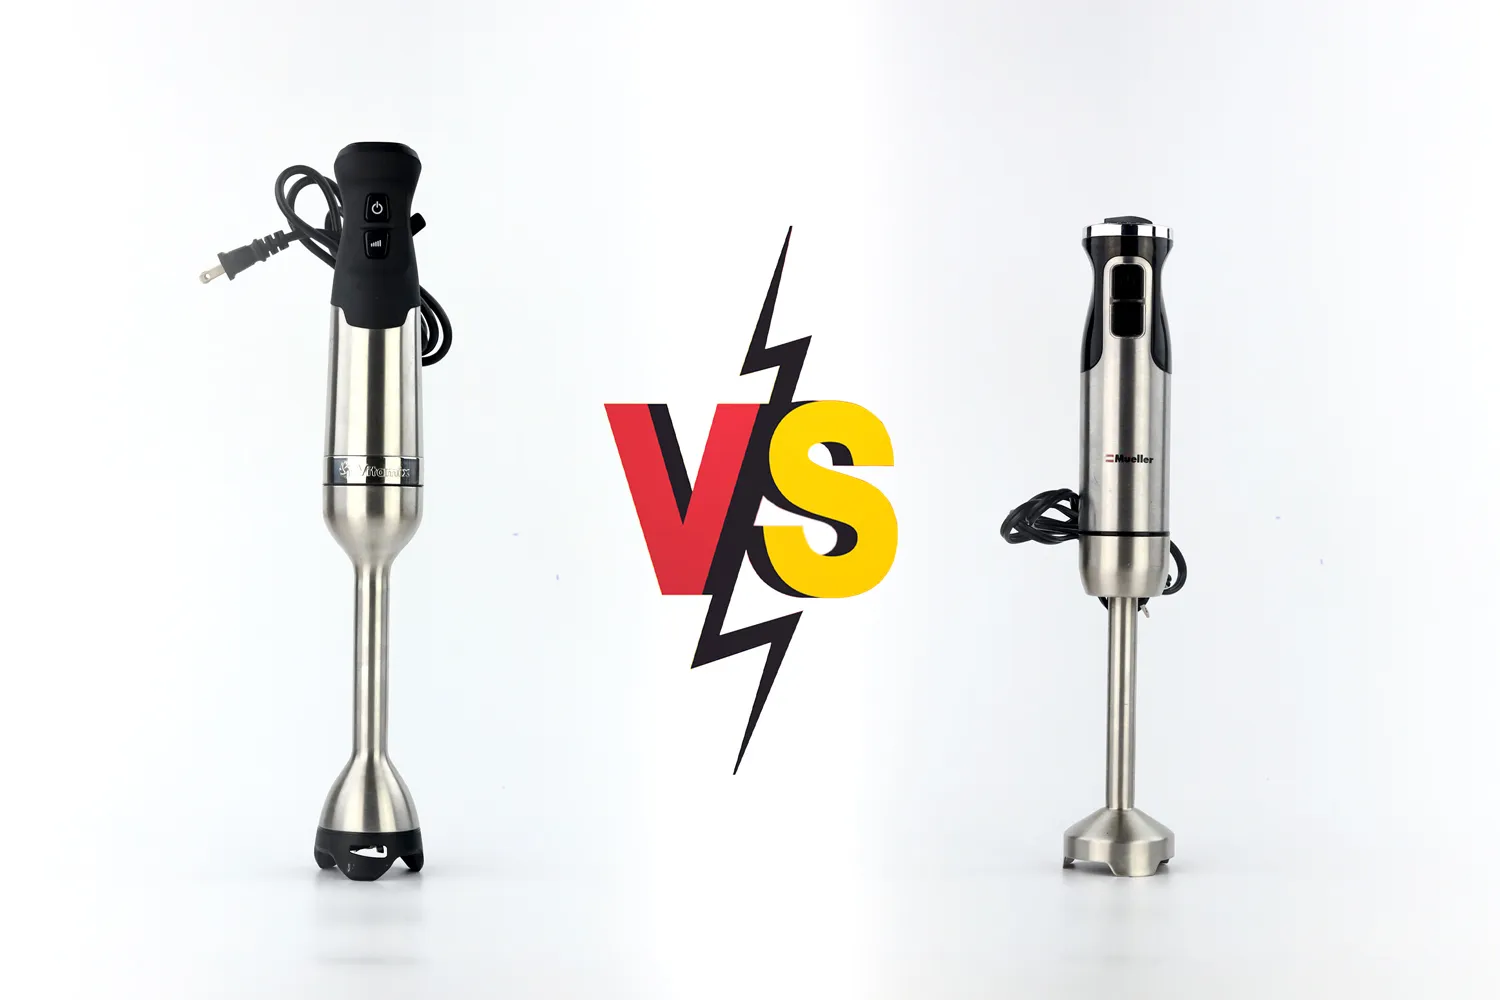 Muller Ultra-Stick vs. Vitamix 5-Speed: An Asymmetric Battle